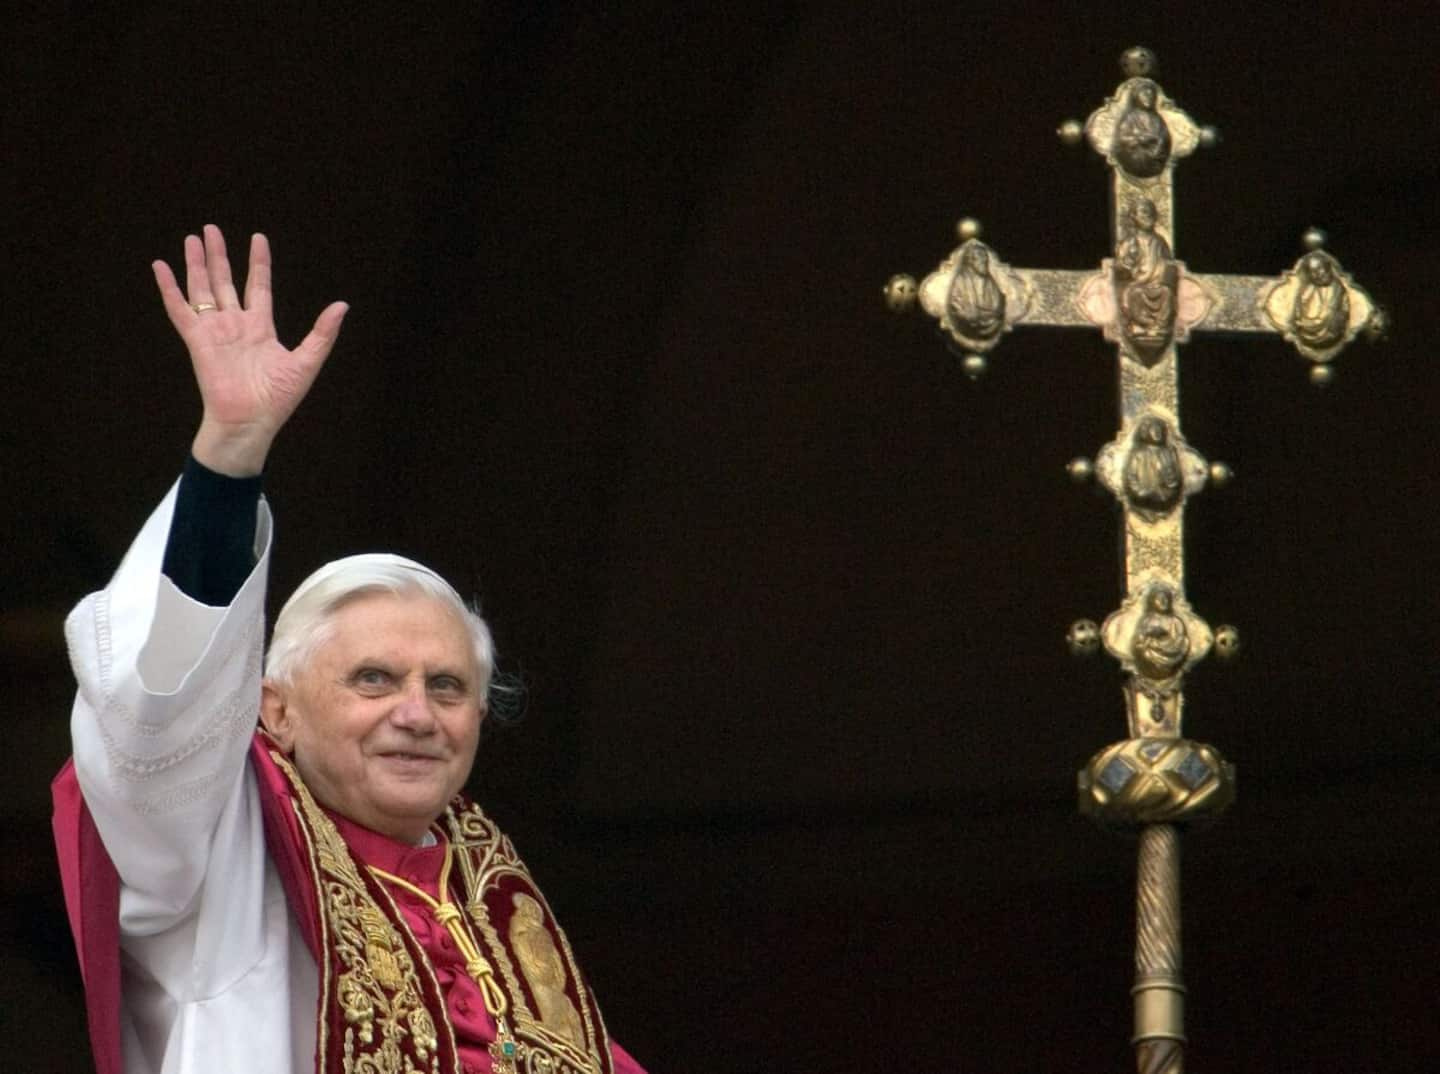 In his spiritual testament, Benedict XVI asks for forgiveness